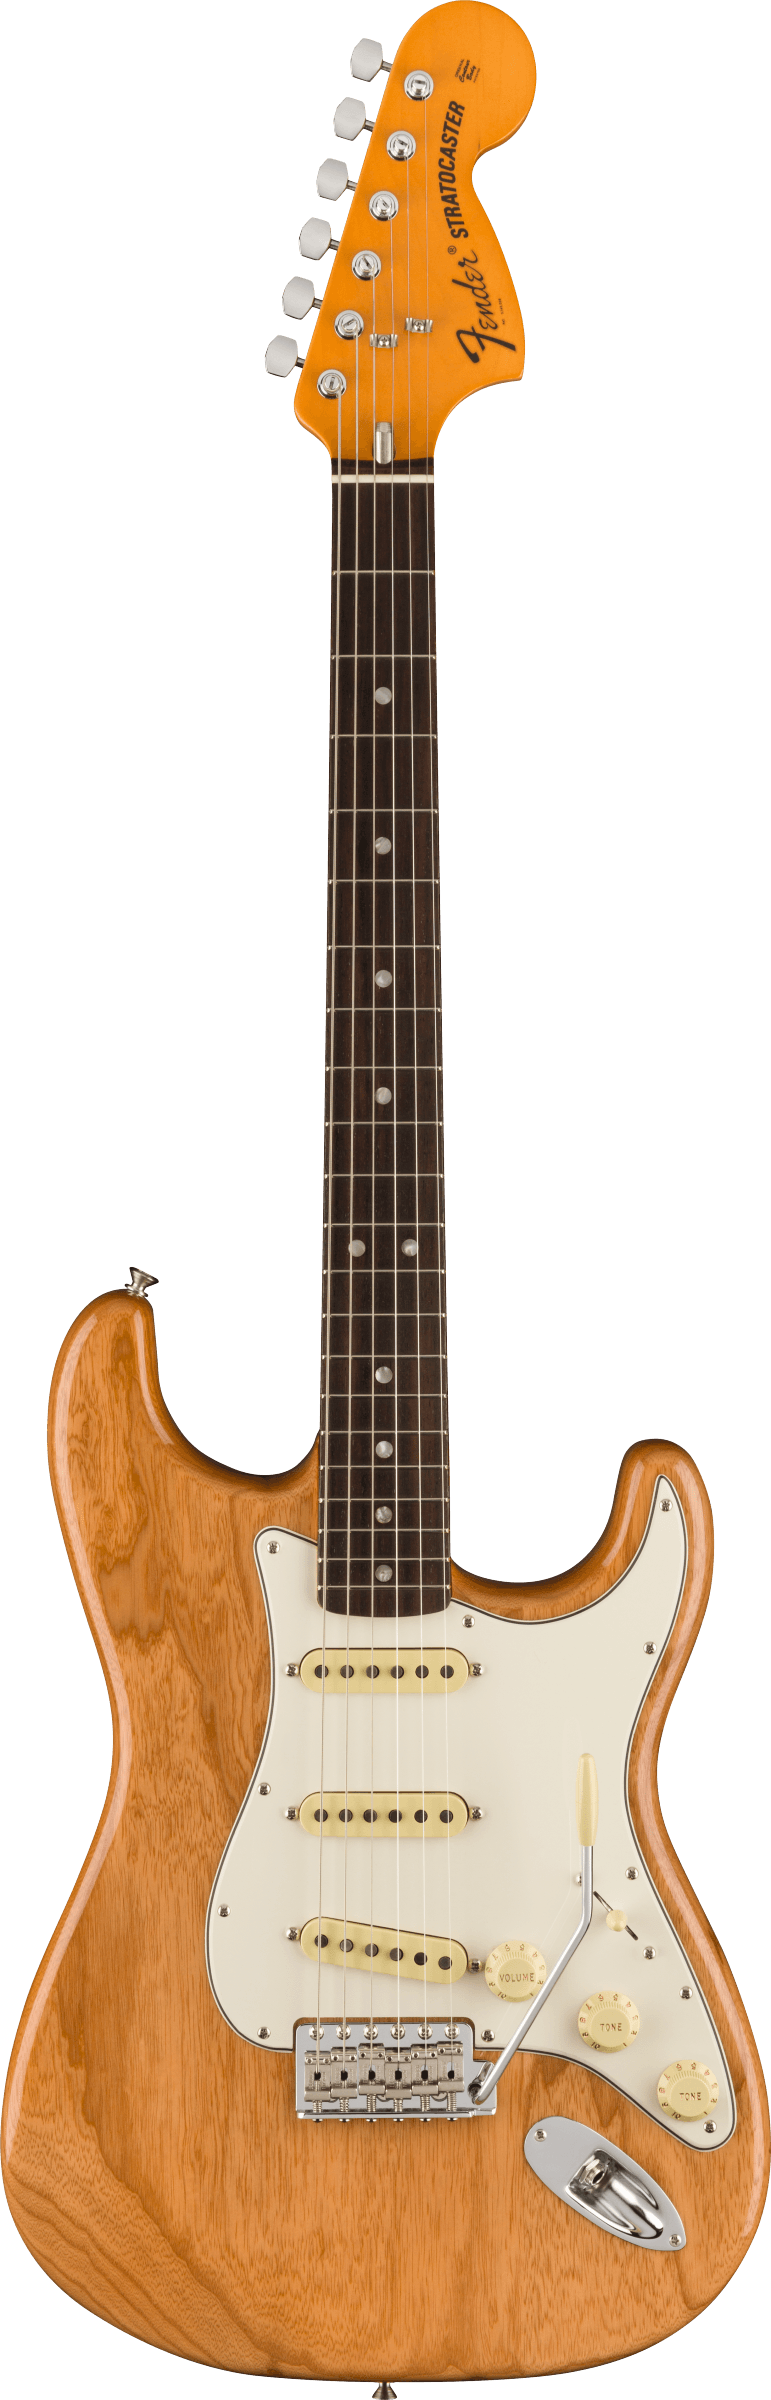 Fender American Vintage II 1973 Stratocaster®, Rosewood Fingerboard, Aged Natural